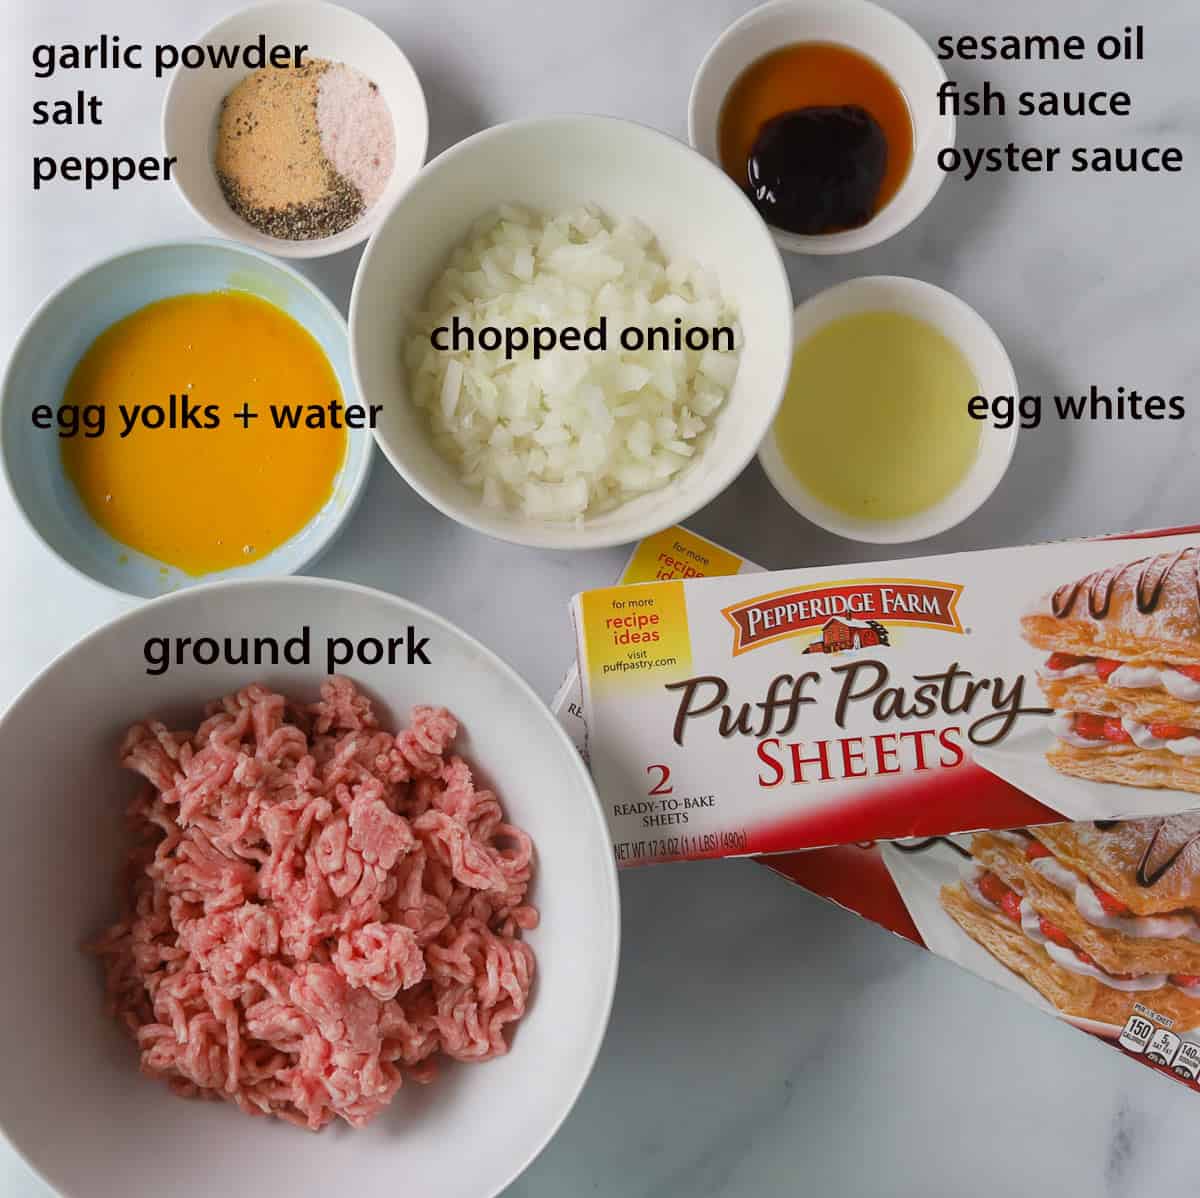 pate chaud ingredients